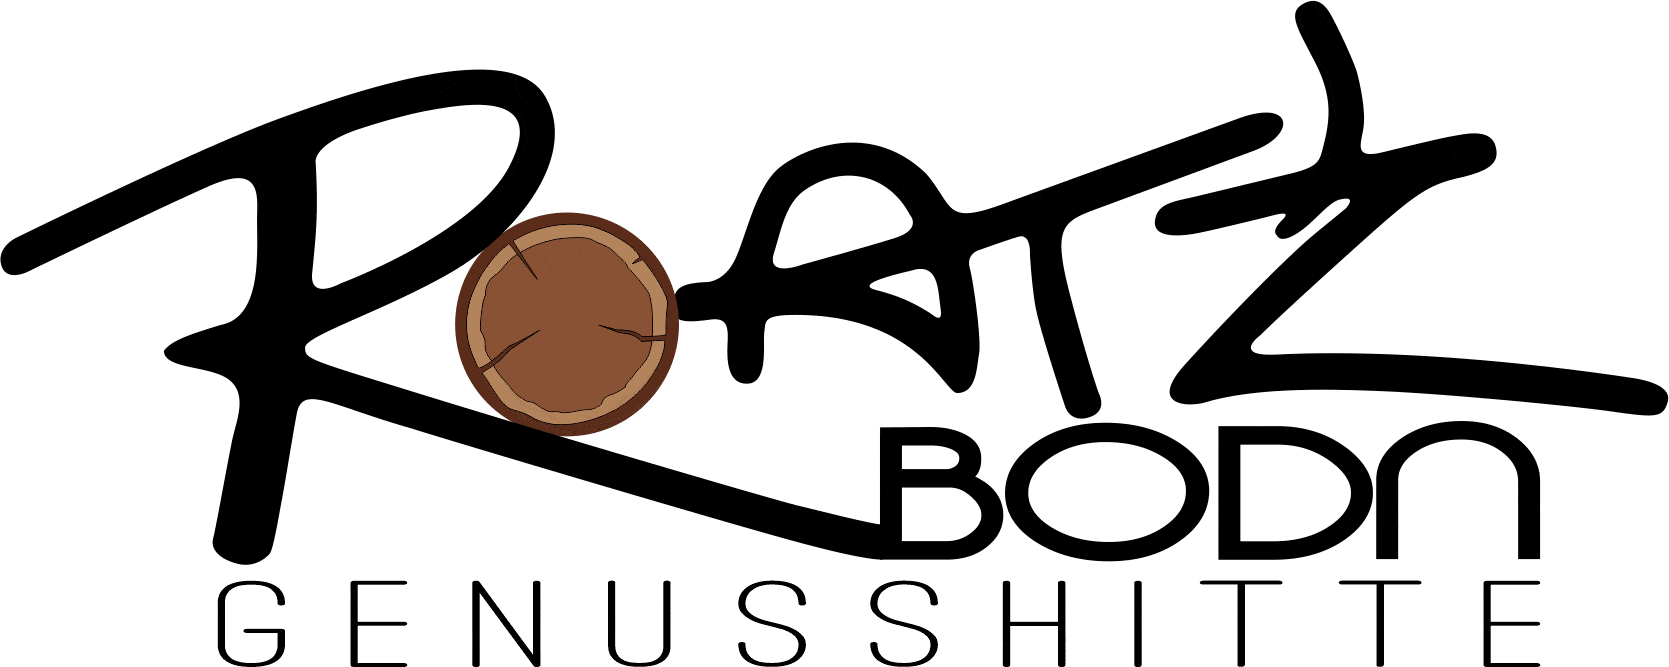 Roat'z Bodn Genusshitte Logo Farbe